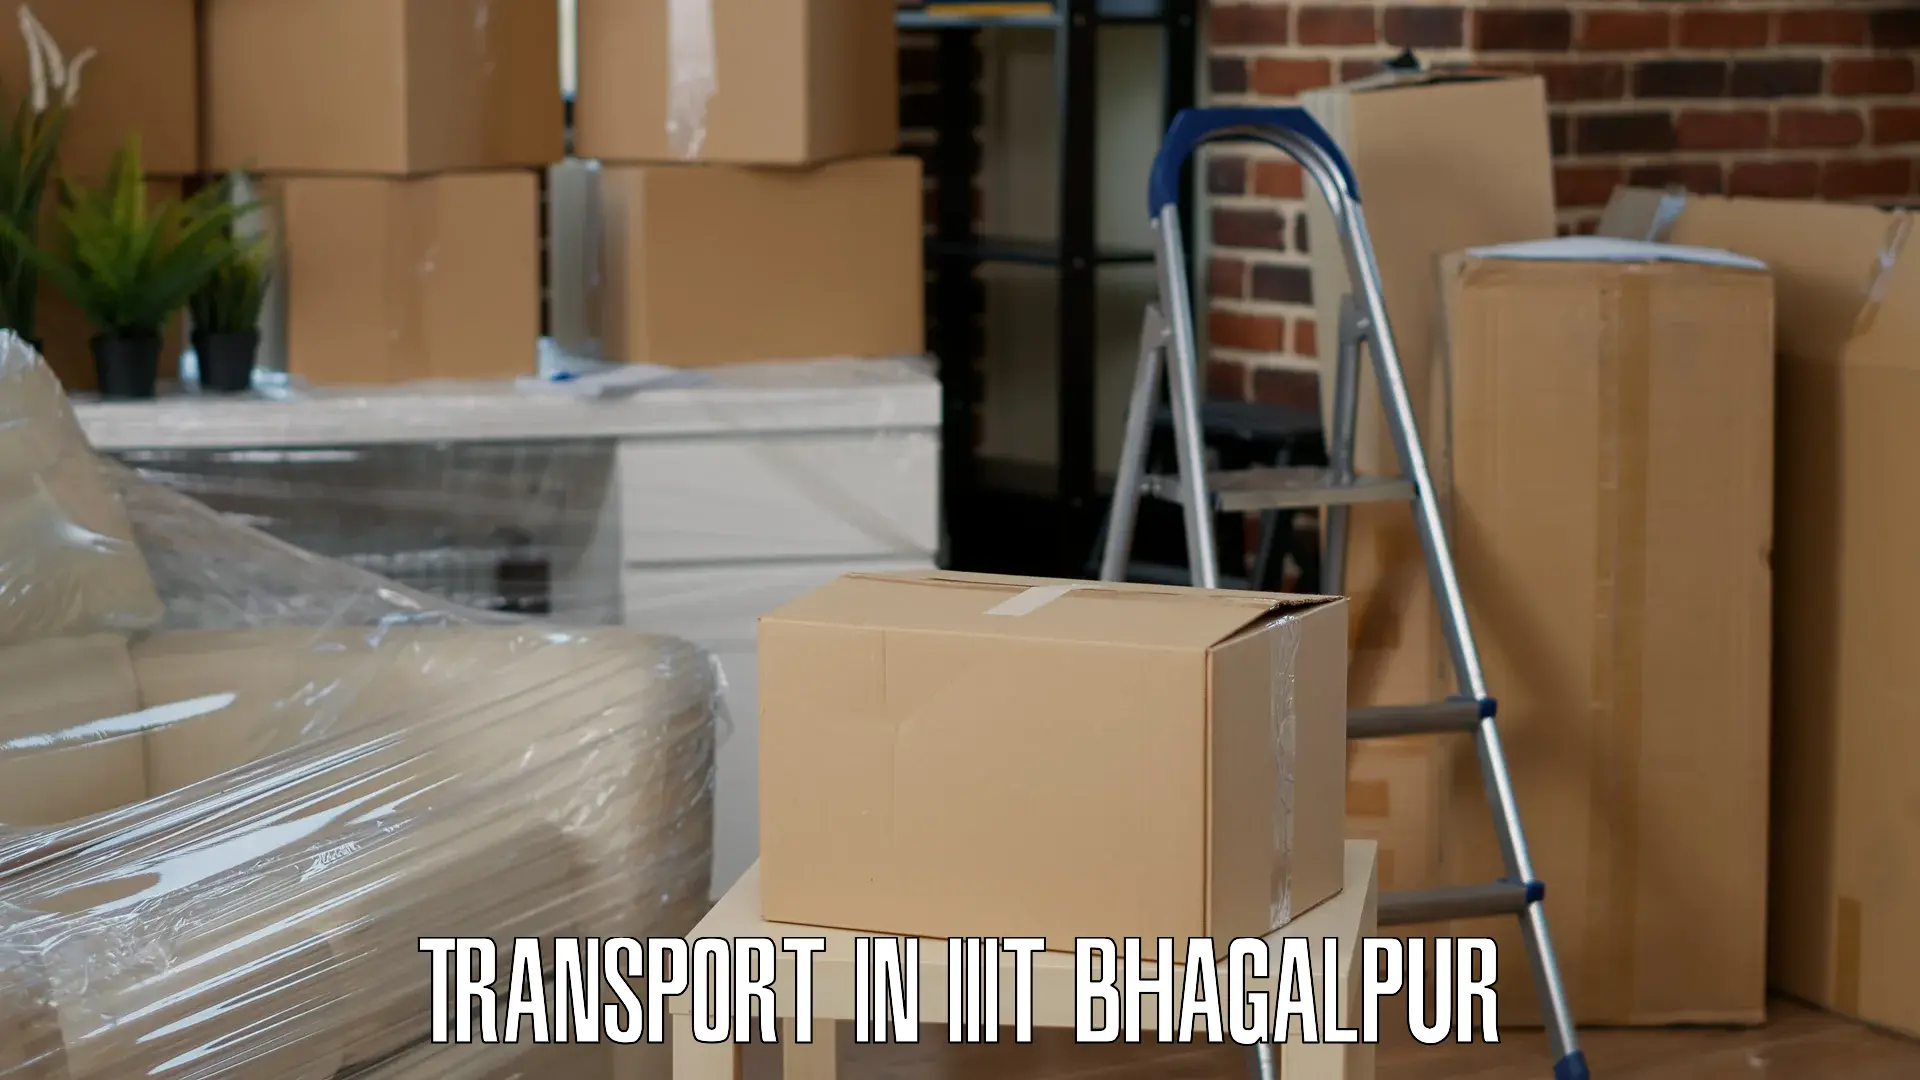 Interstate transport services in IIIT Bhagalpur